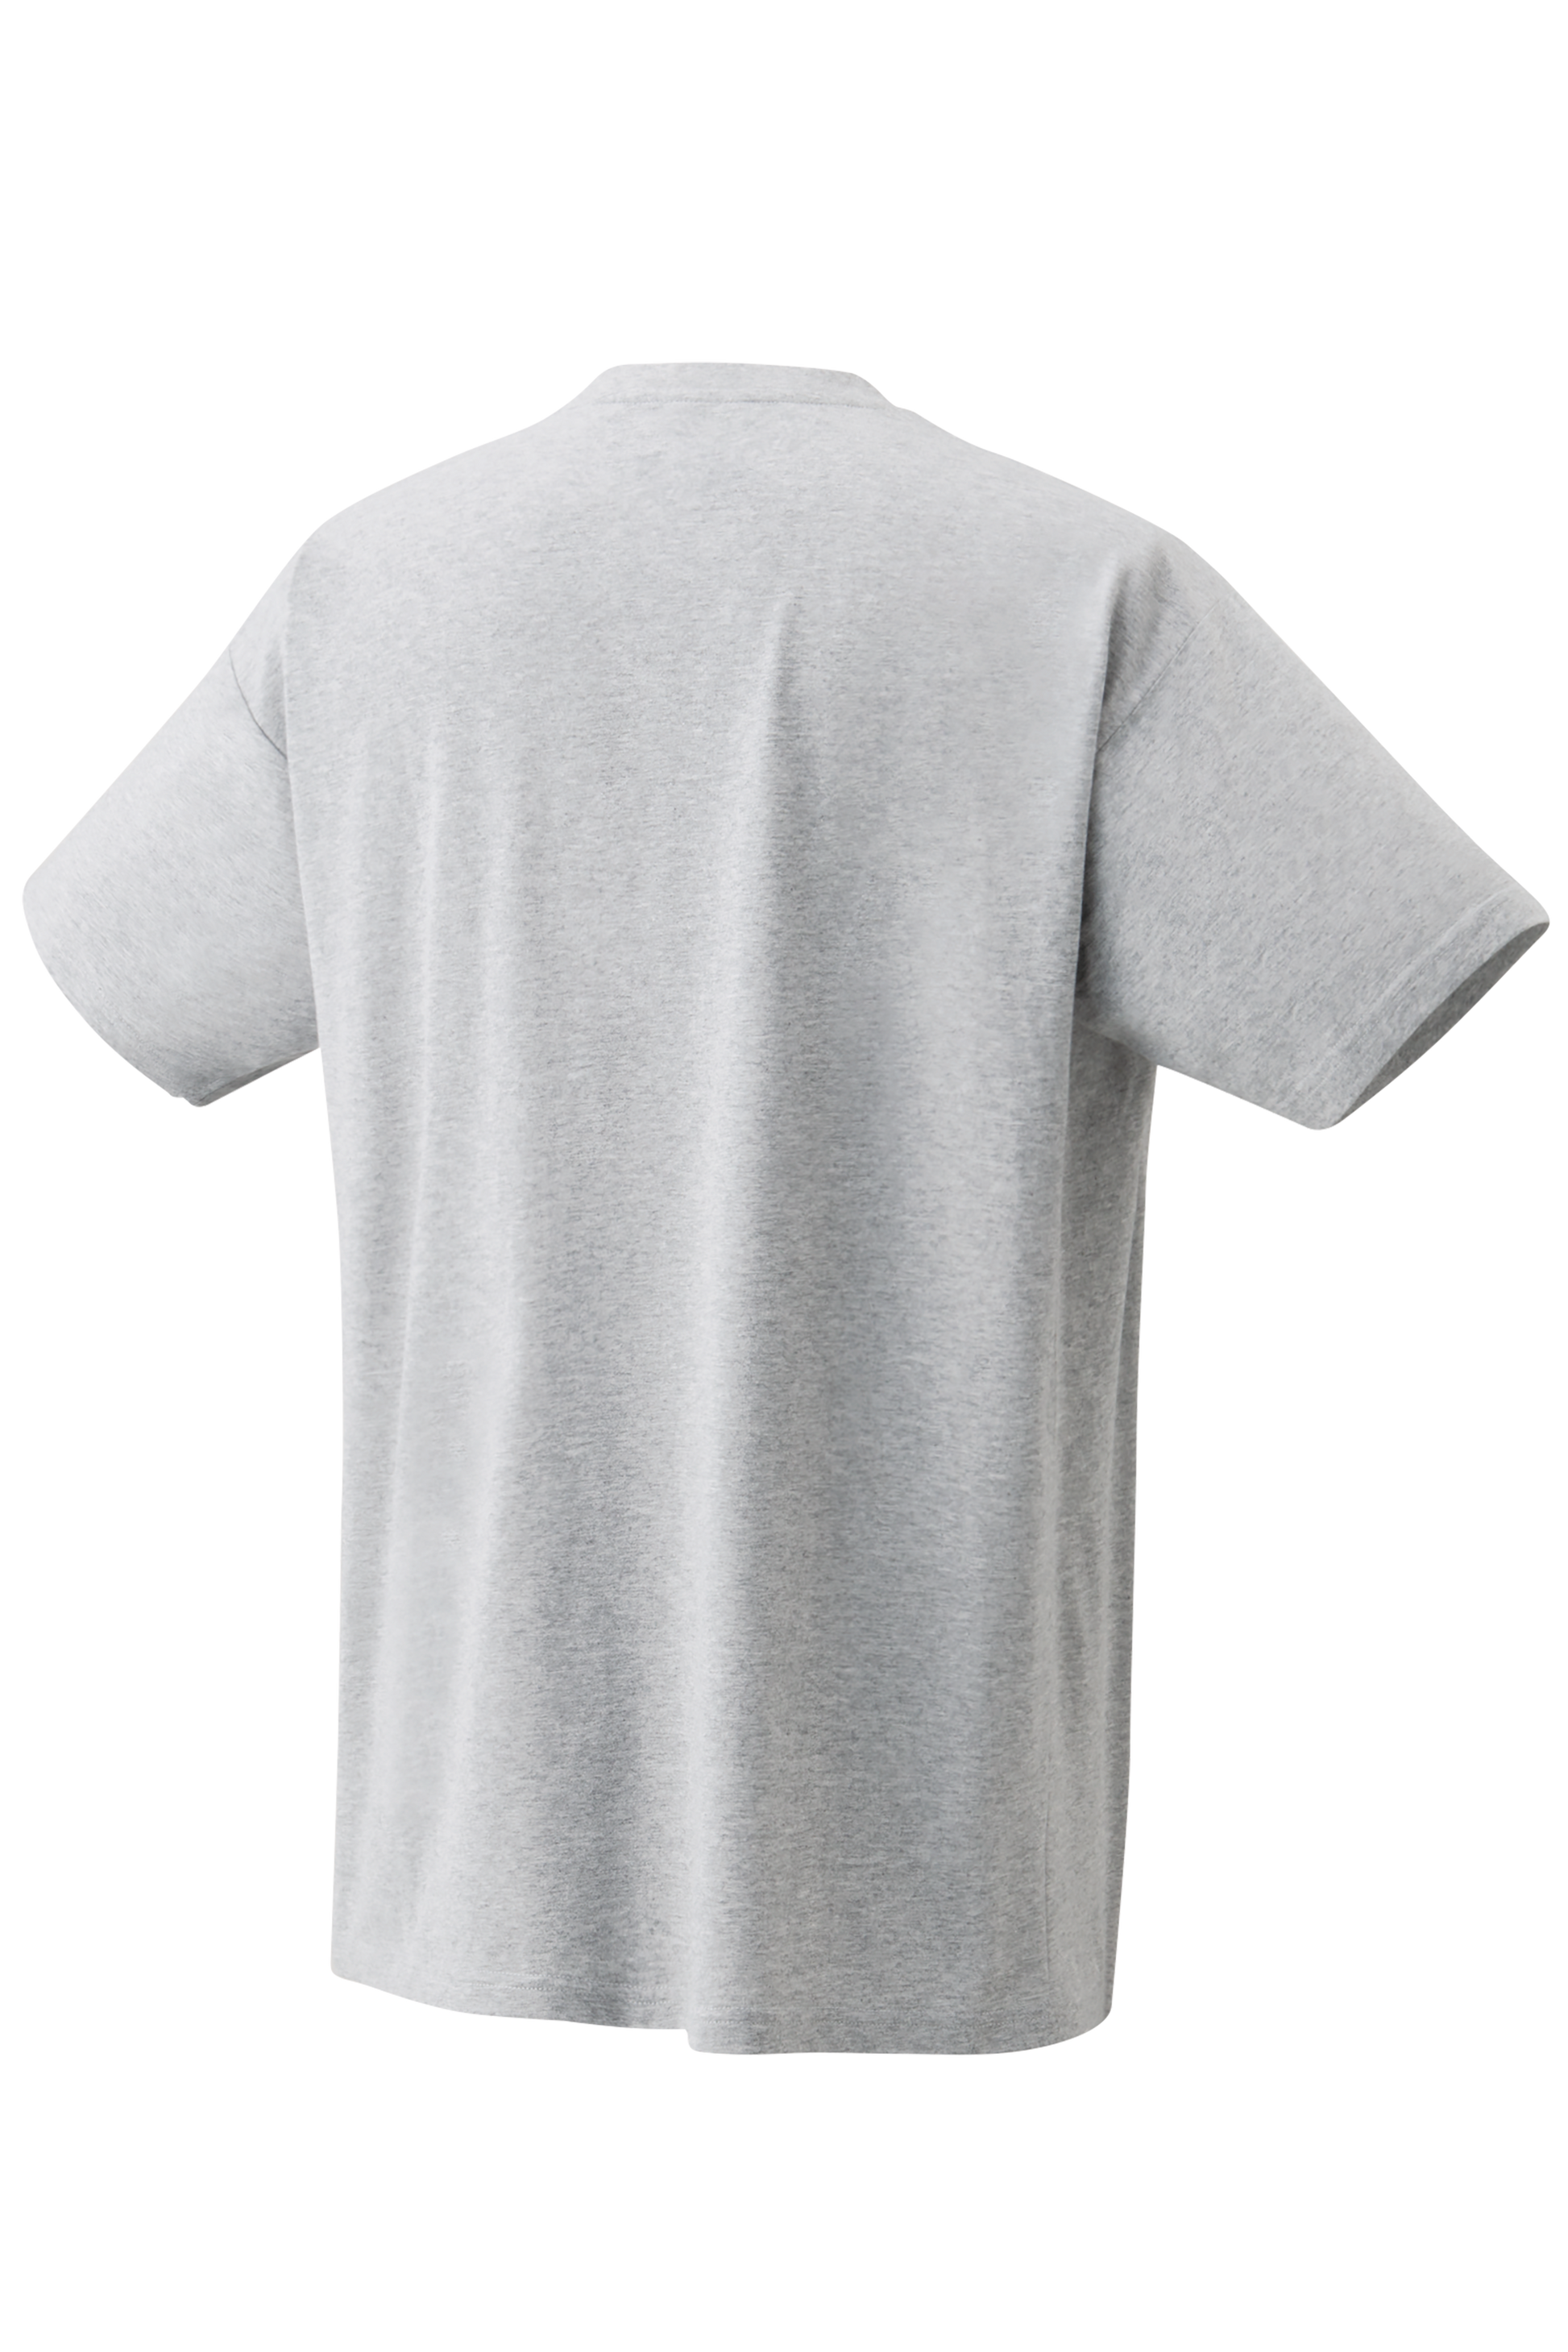 YONEX Men's T-Shirt 16428 [Grey] - Max Sports